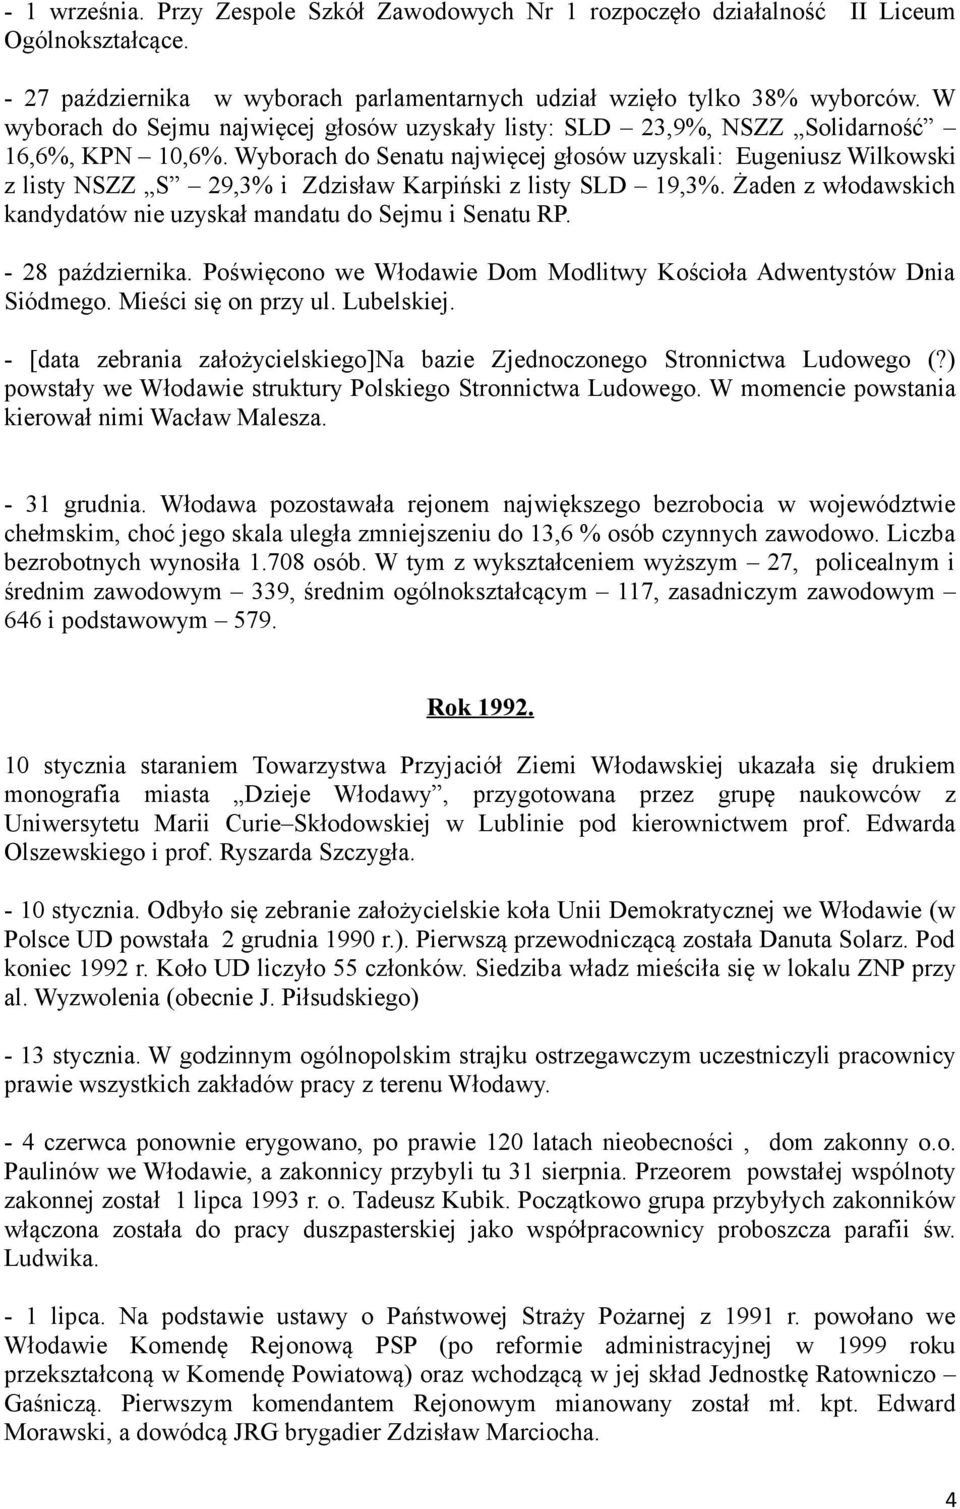 Wyborach do Senatu najwięcej głosów uzyskali: Eugeniusz Wilkowski z listy NSZZ S 29,3% i Zdzisław Karpiński z listy SLD 19,3%. Żaden z włodawskich kandydatów nie uzyskał mandatu do Sejmu i Senatu RP.